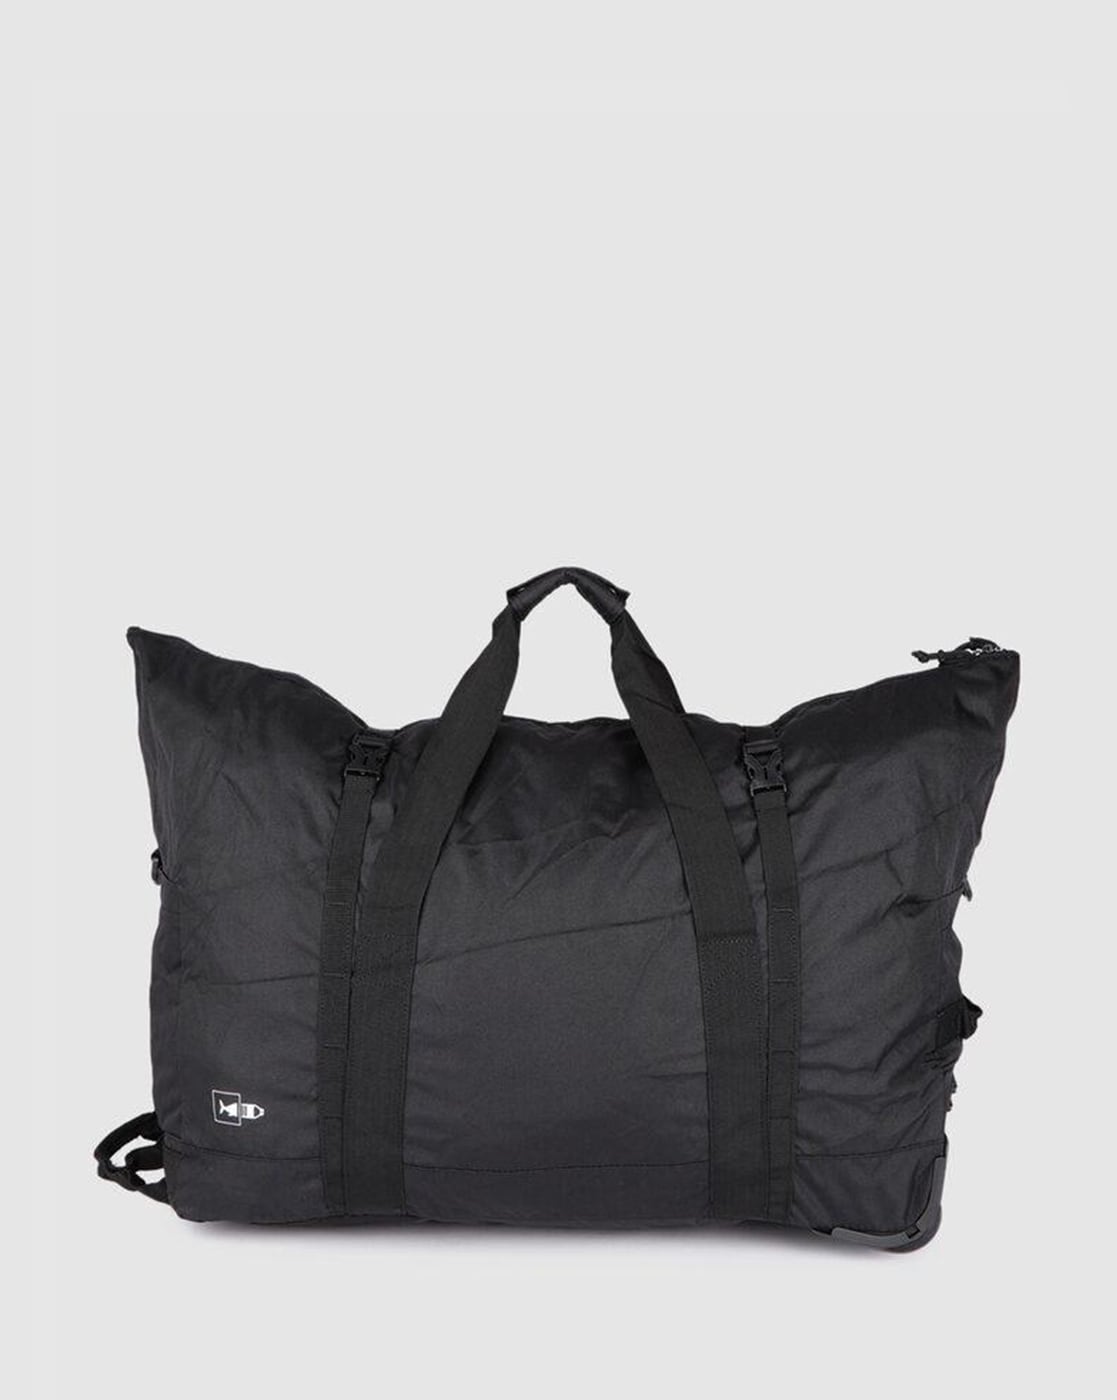 Individual Design- Shop Oliver Duffle Bag Online